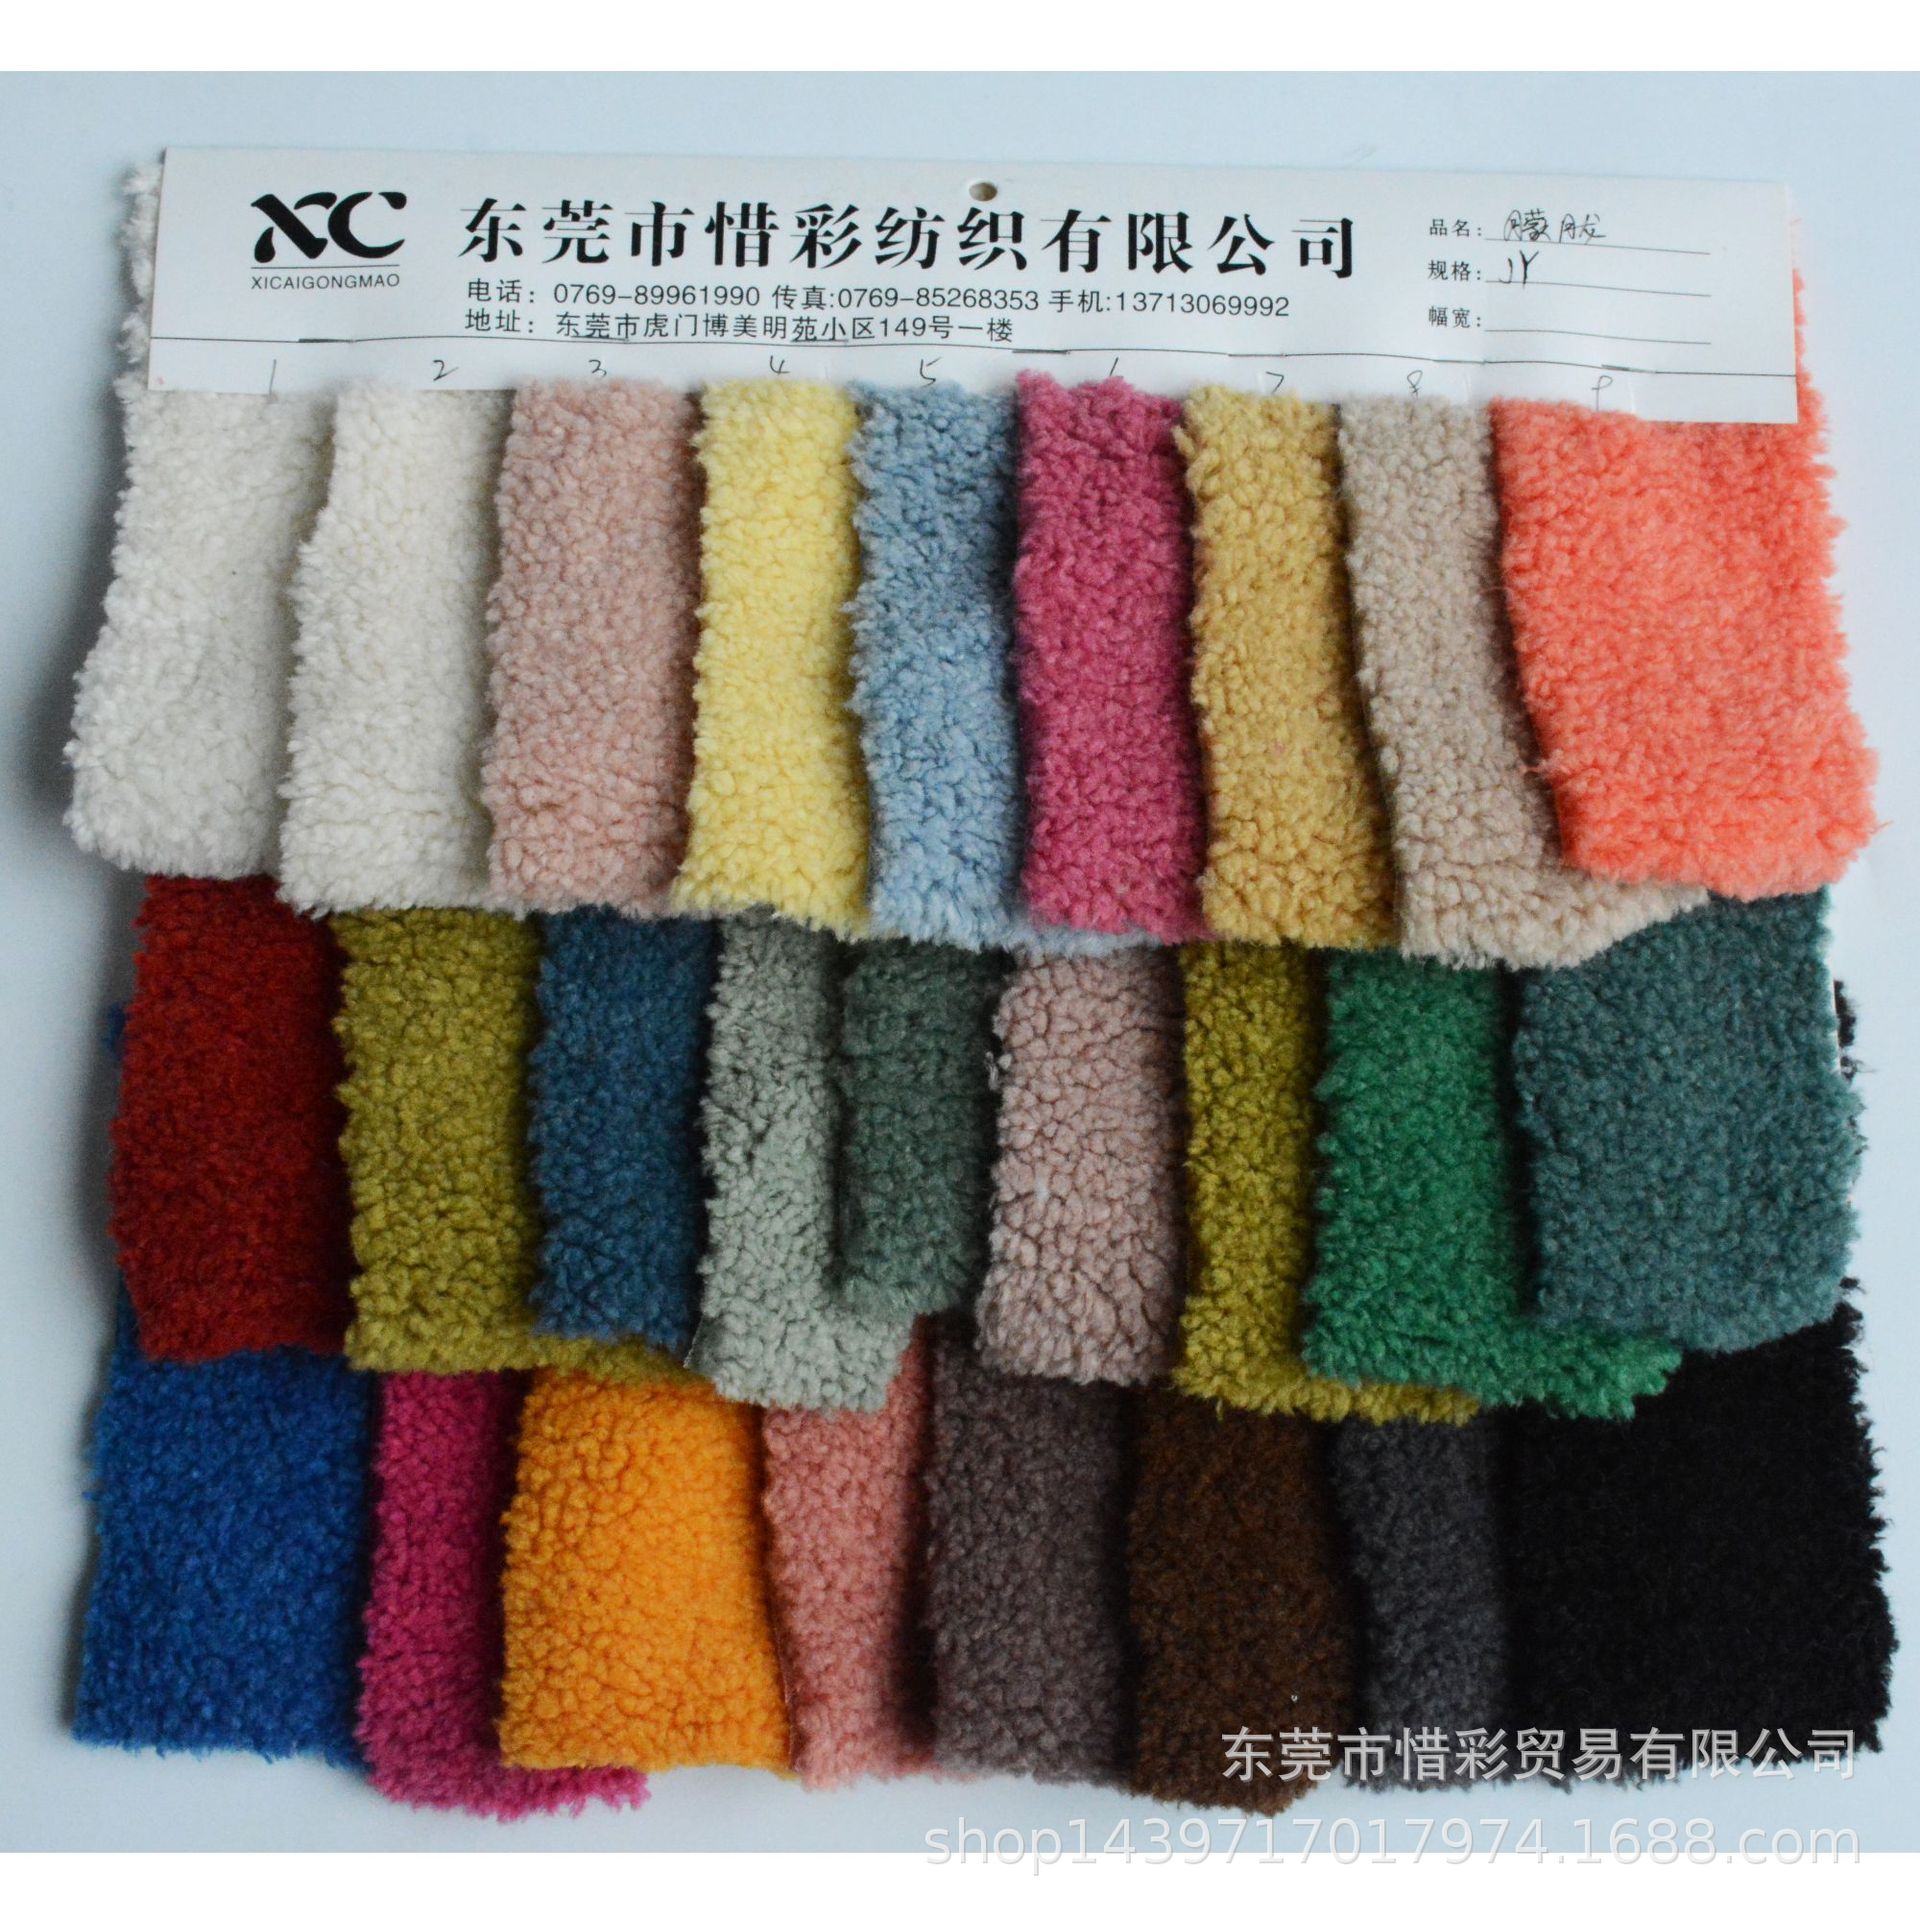 现货 颗粒羊羔绒 加厚短羊绒 大衣童装家纺玩具复合毛绒面料